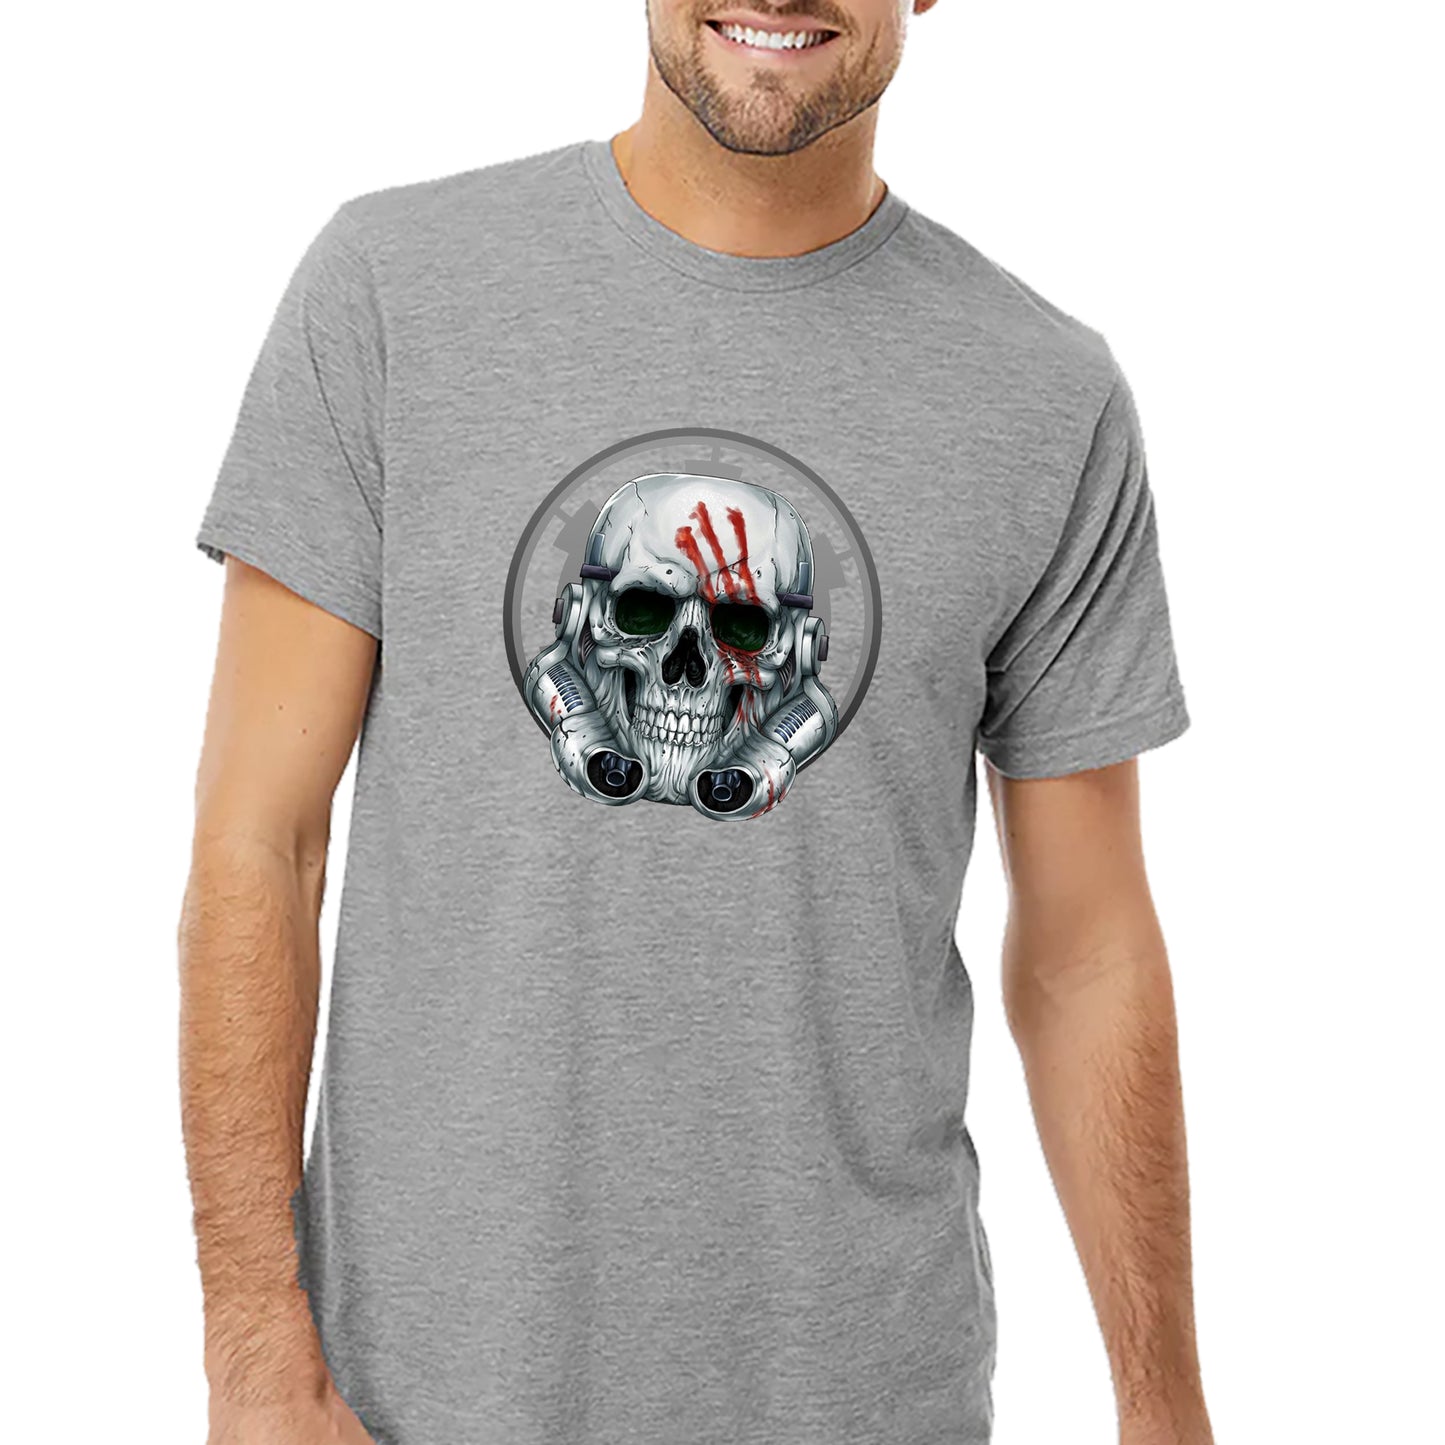 Skull Trooper T-shirt